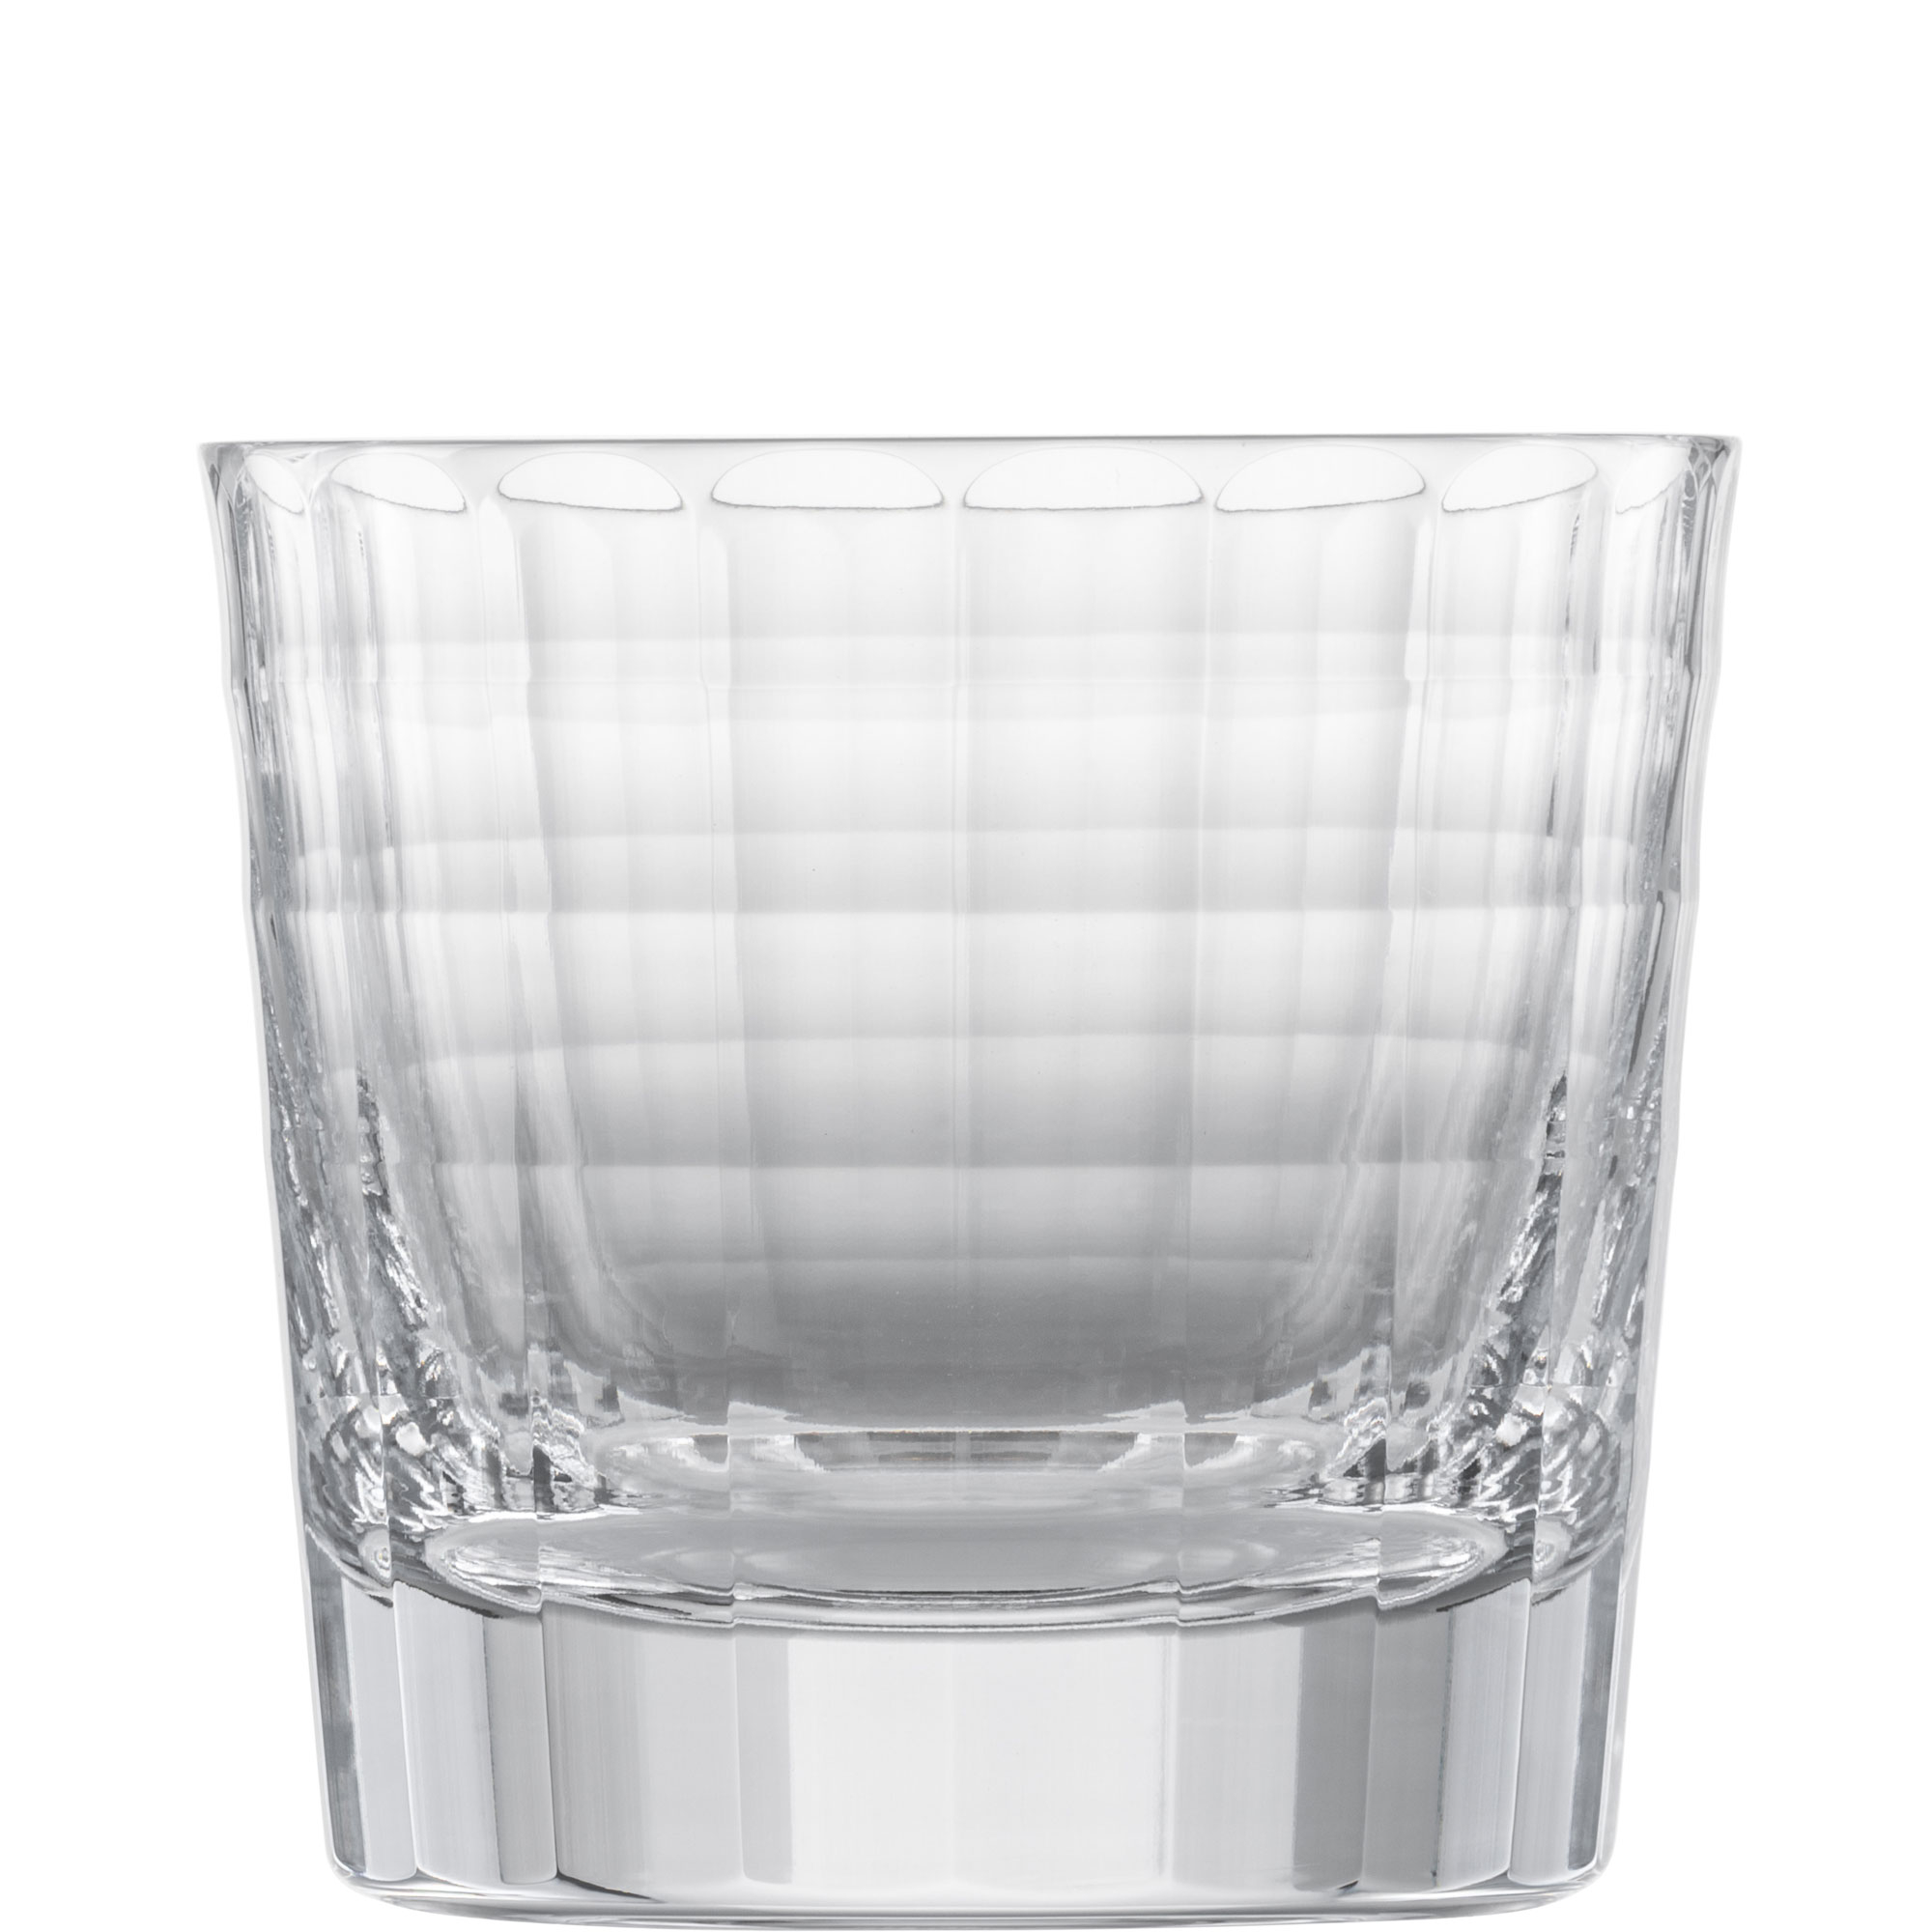 Whiskyglas Hommage Carat, Zwiesel Glas - 384ml (1 Stk.)